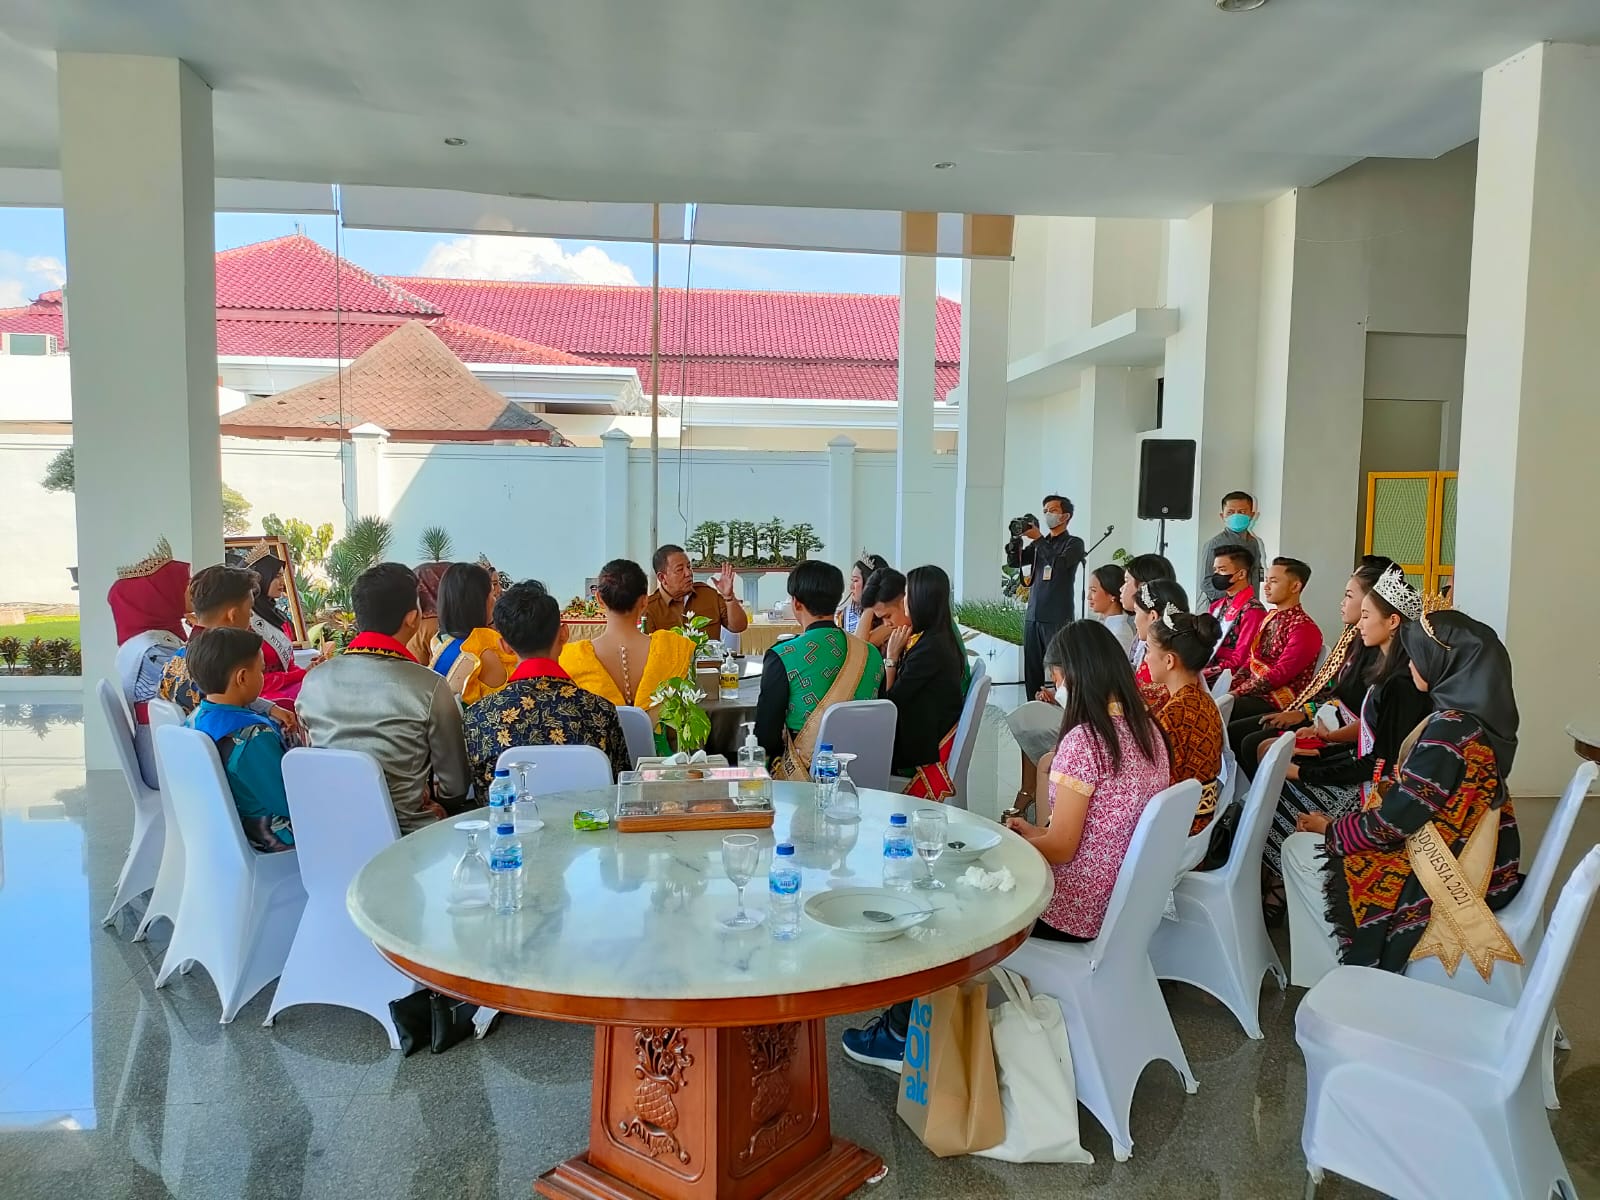 Audiensi Bersama Putra - Putri Peraih Gelar Pada Ajang Pemilihan Berbasis Pariwisata Dan Budaya, Gubernur Ajak Bangun Lampung disektor Wisata dan Budaya